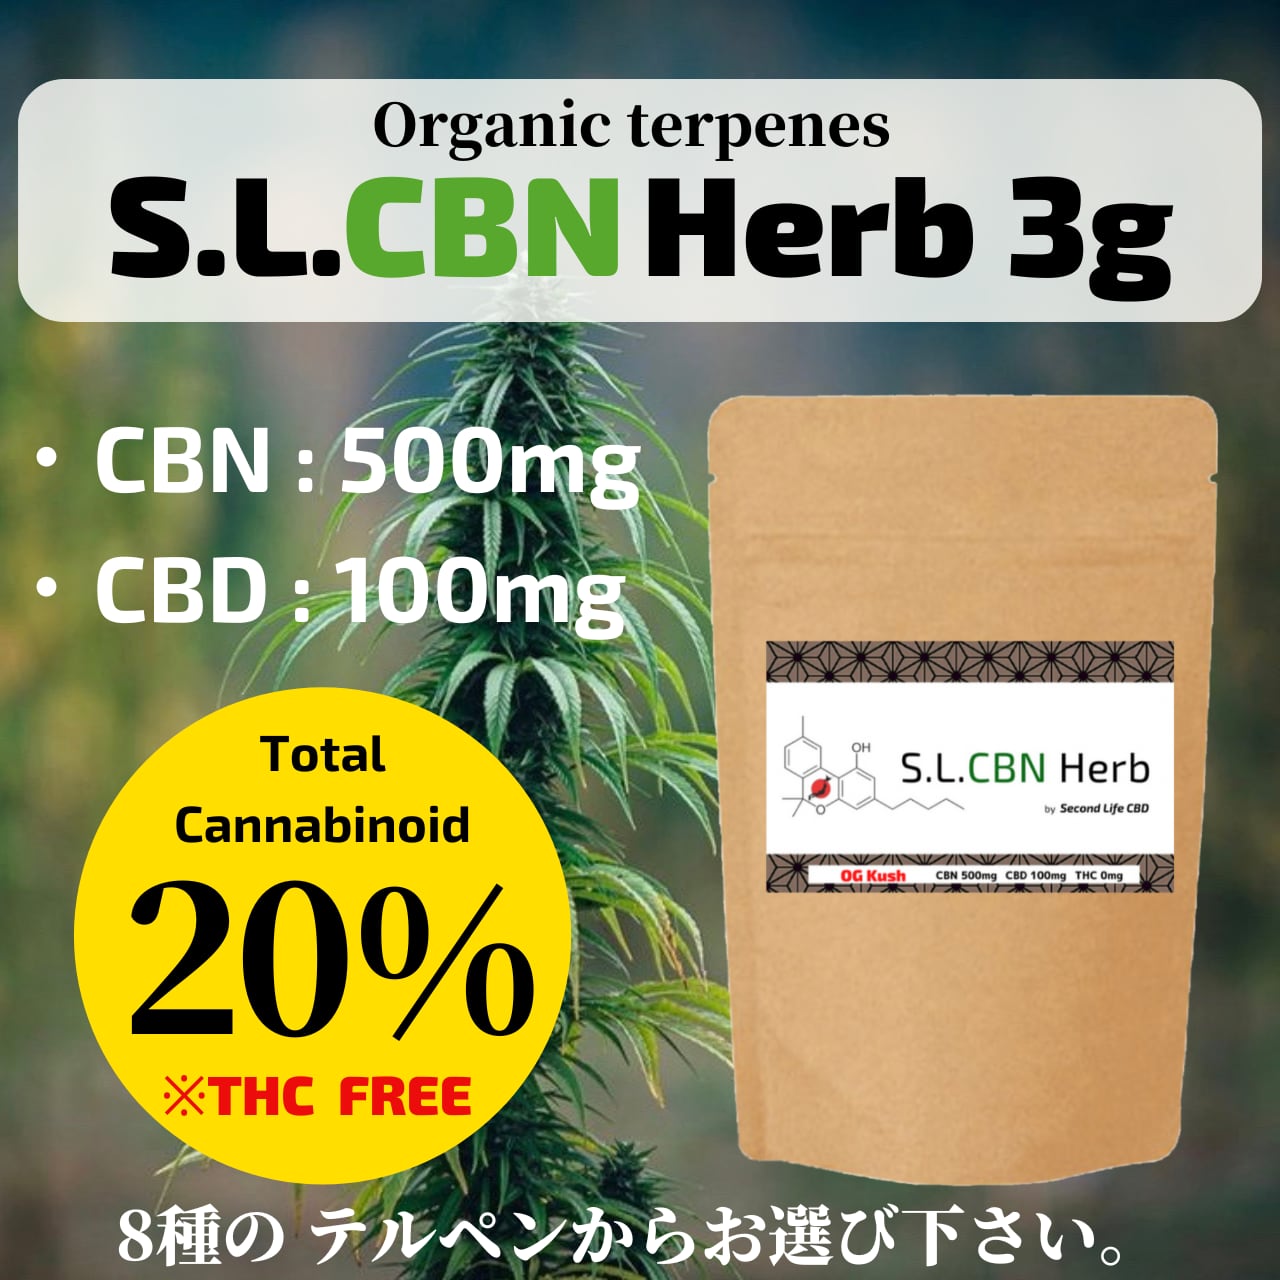 【CBNハーブ】S.L.CBN Herb 3g CBN500mg+ CBD100mg 